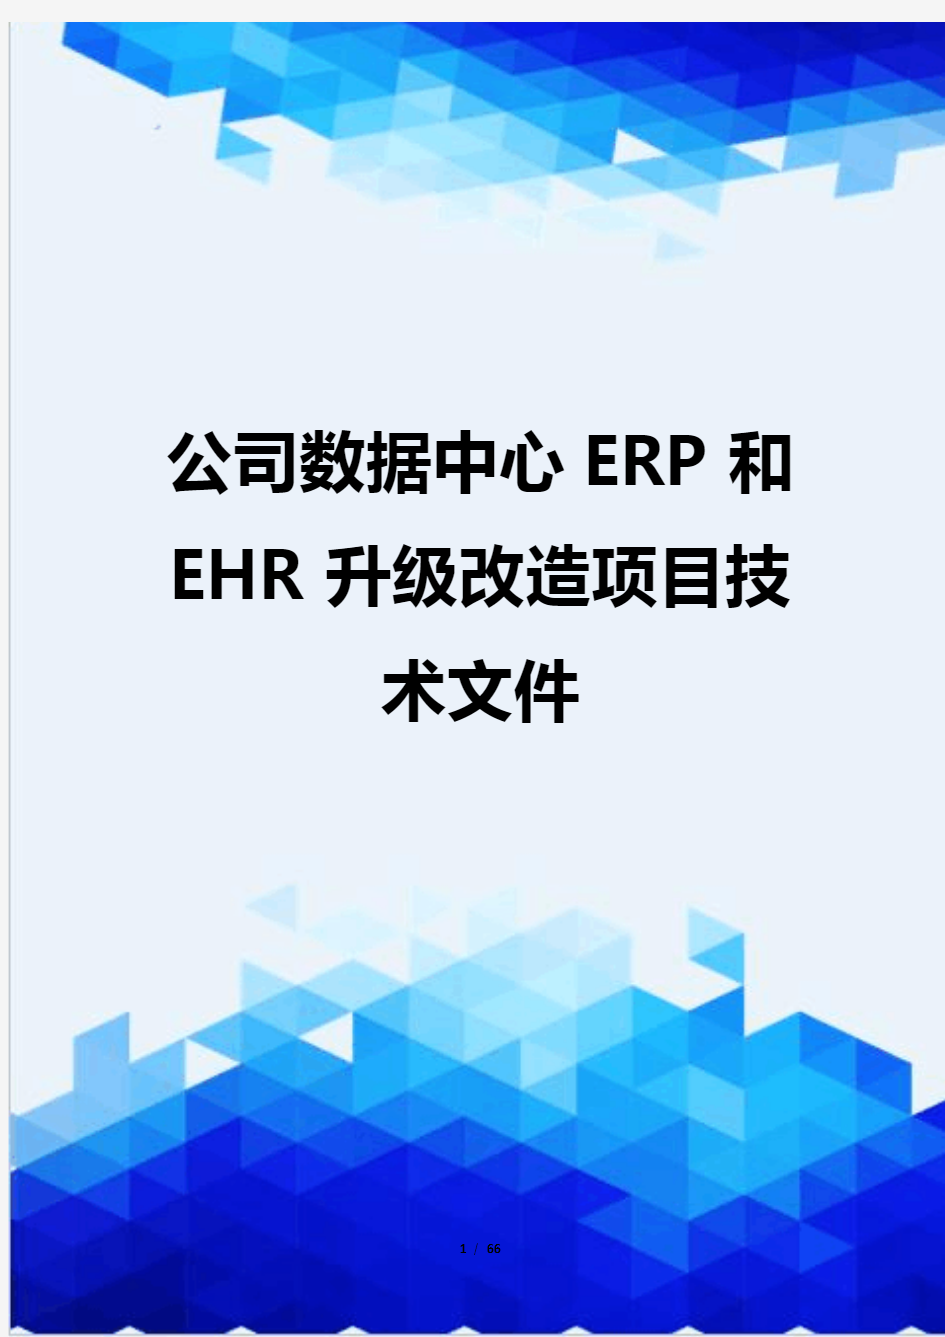 【信息化-精编】公司数据中心ERP和EHR升级改造项目技术文件